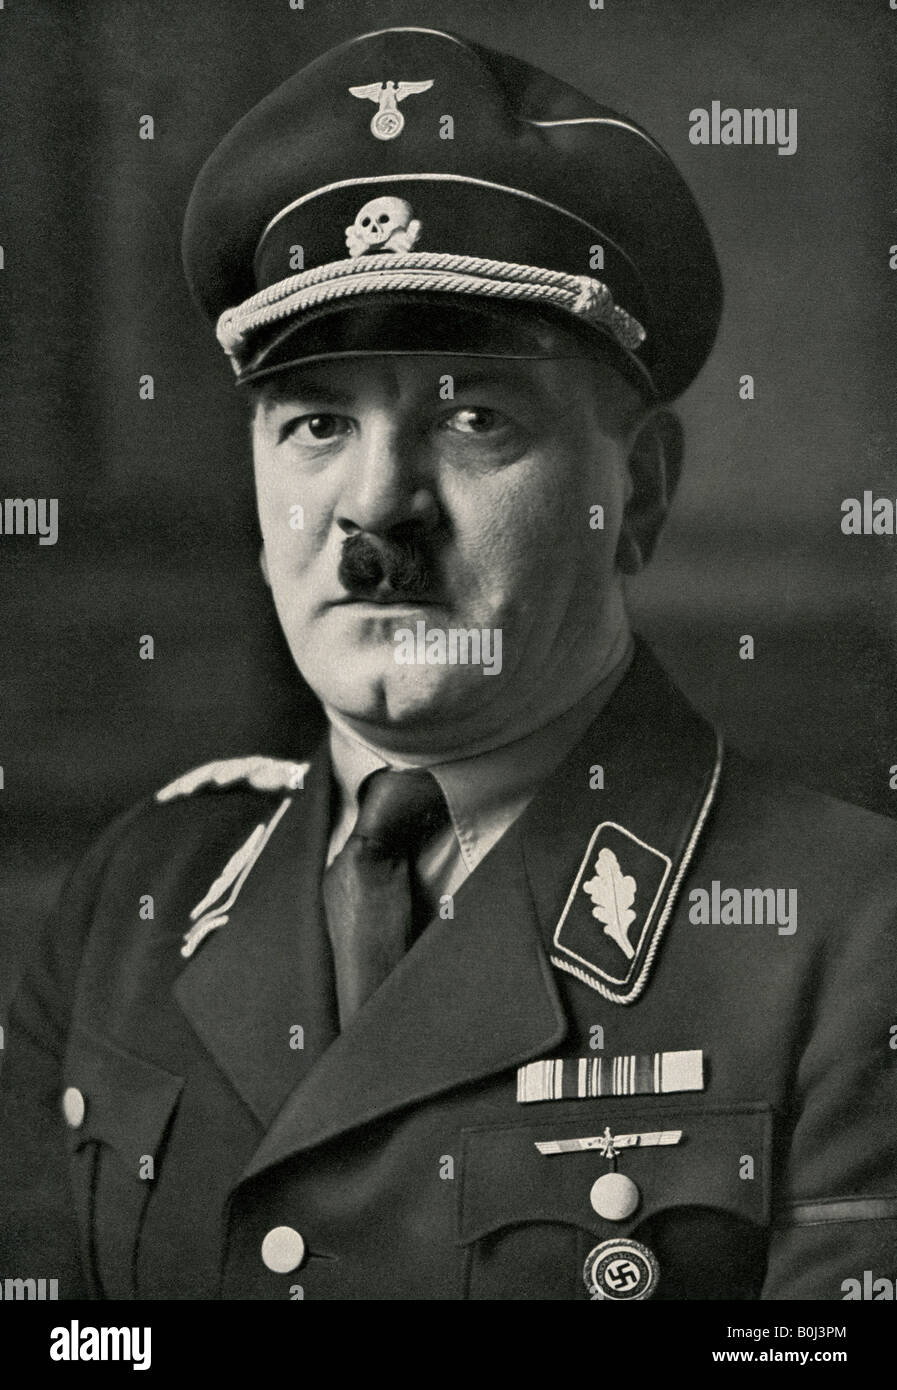 JULIUS SCHRECK (1898-1936) haut fonctionnaire nazi SS dans son uniforme. Ses funérailles à l'éloge funèbre fut prononcée par Adolf Hitler Banque D'Images